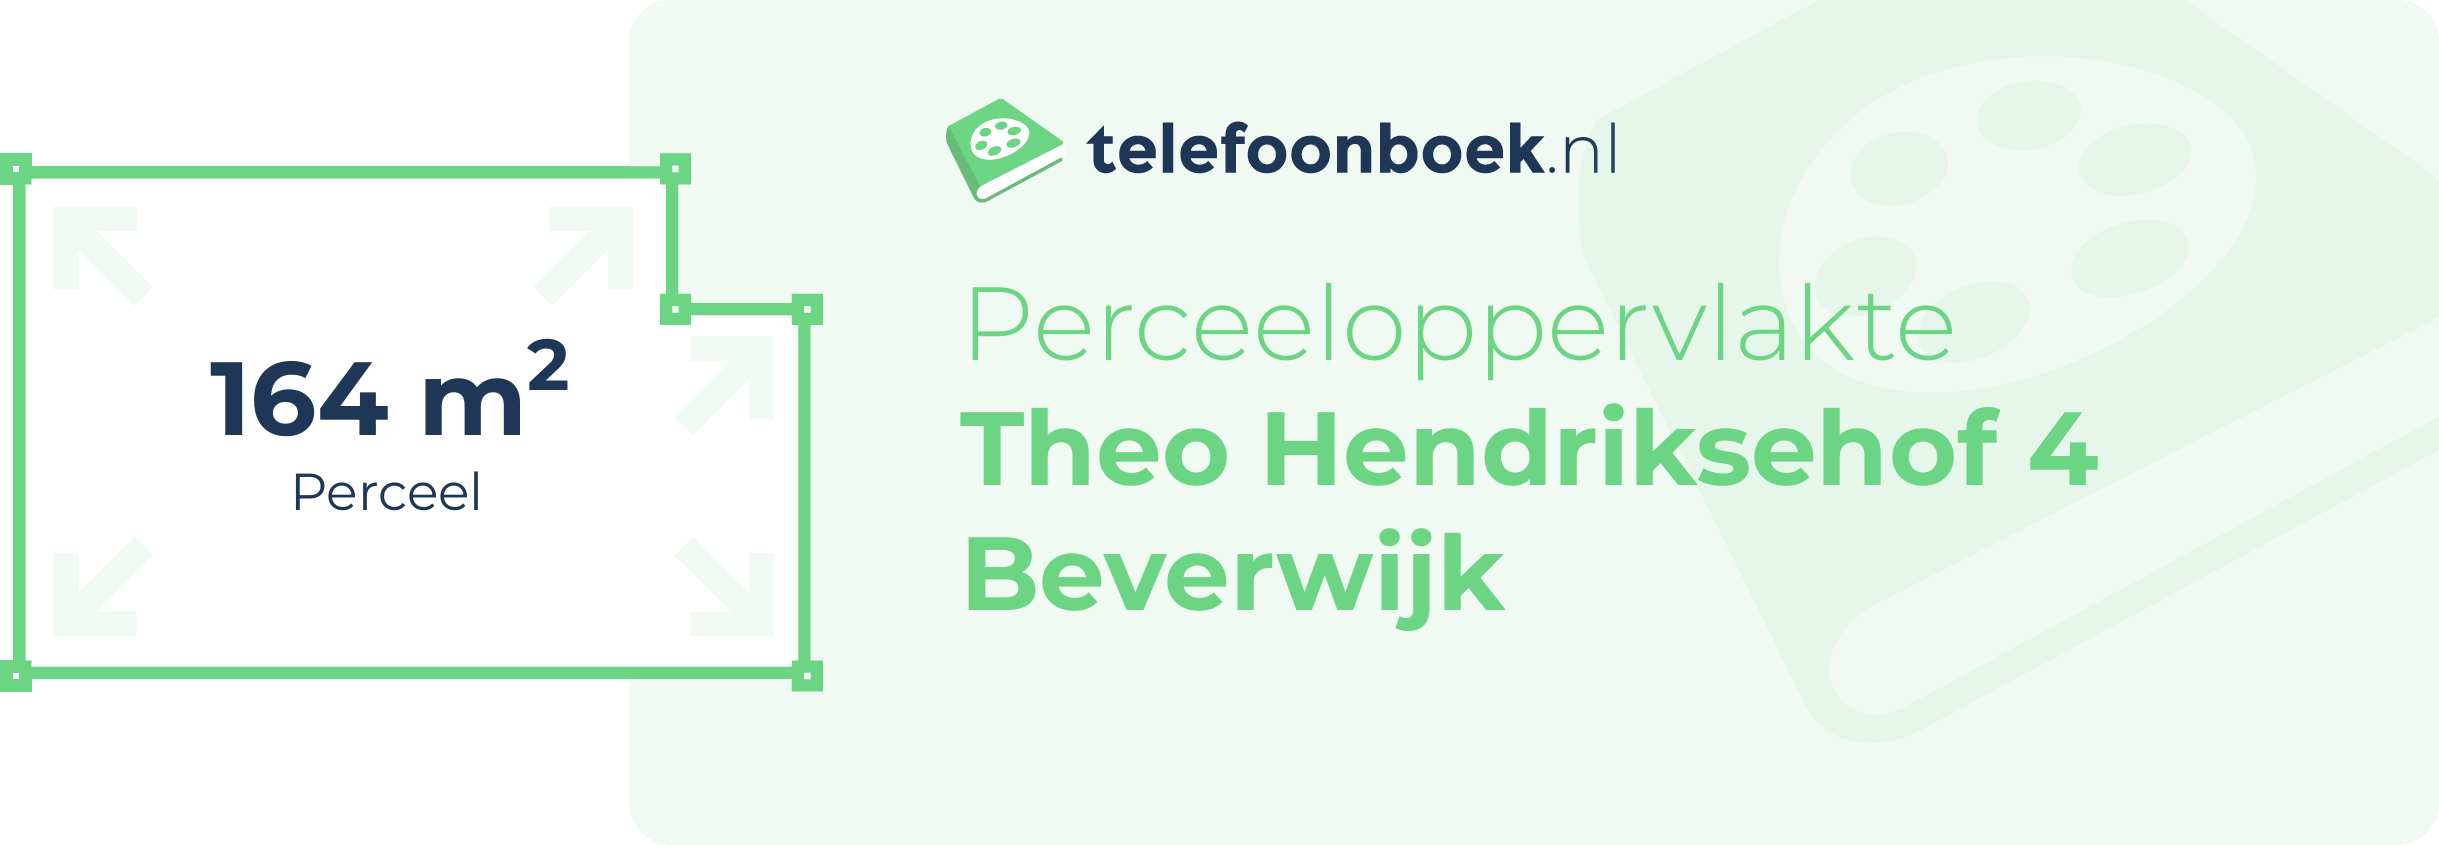 Perceeloppervlakte Theo Hendriksehof 4 Beverwijk